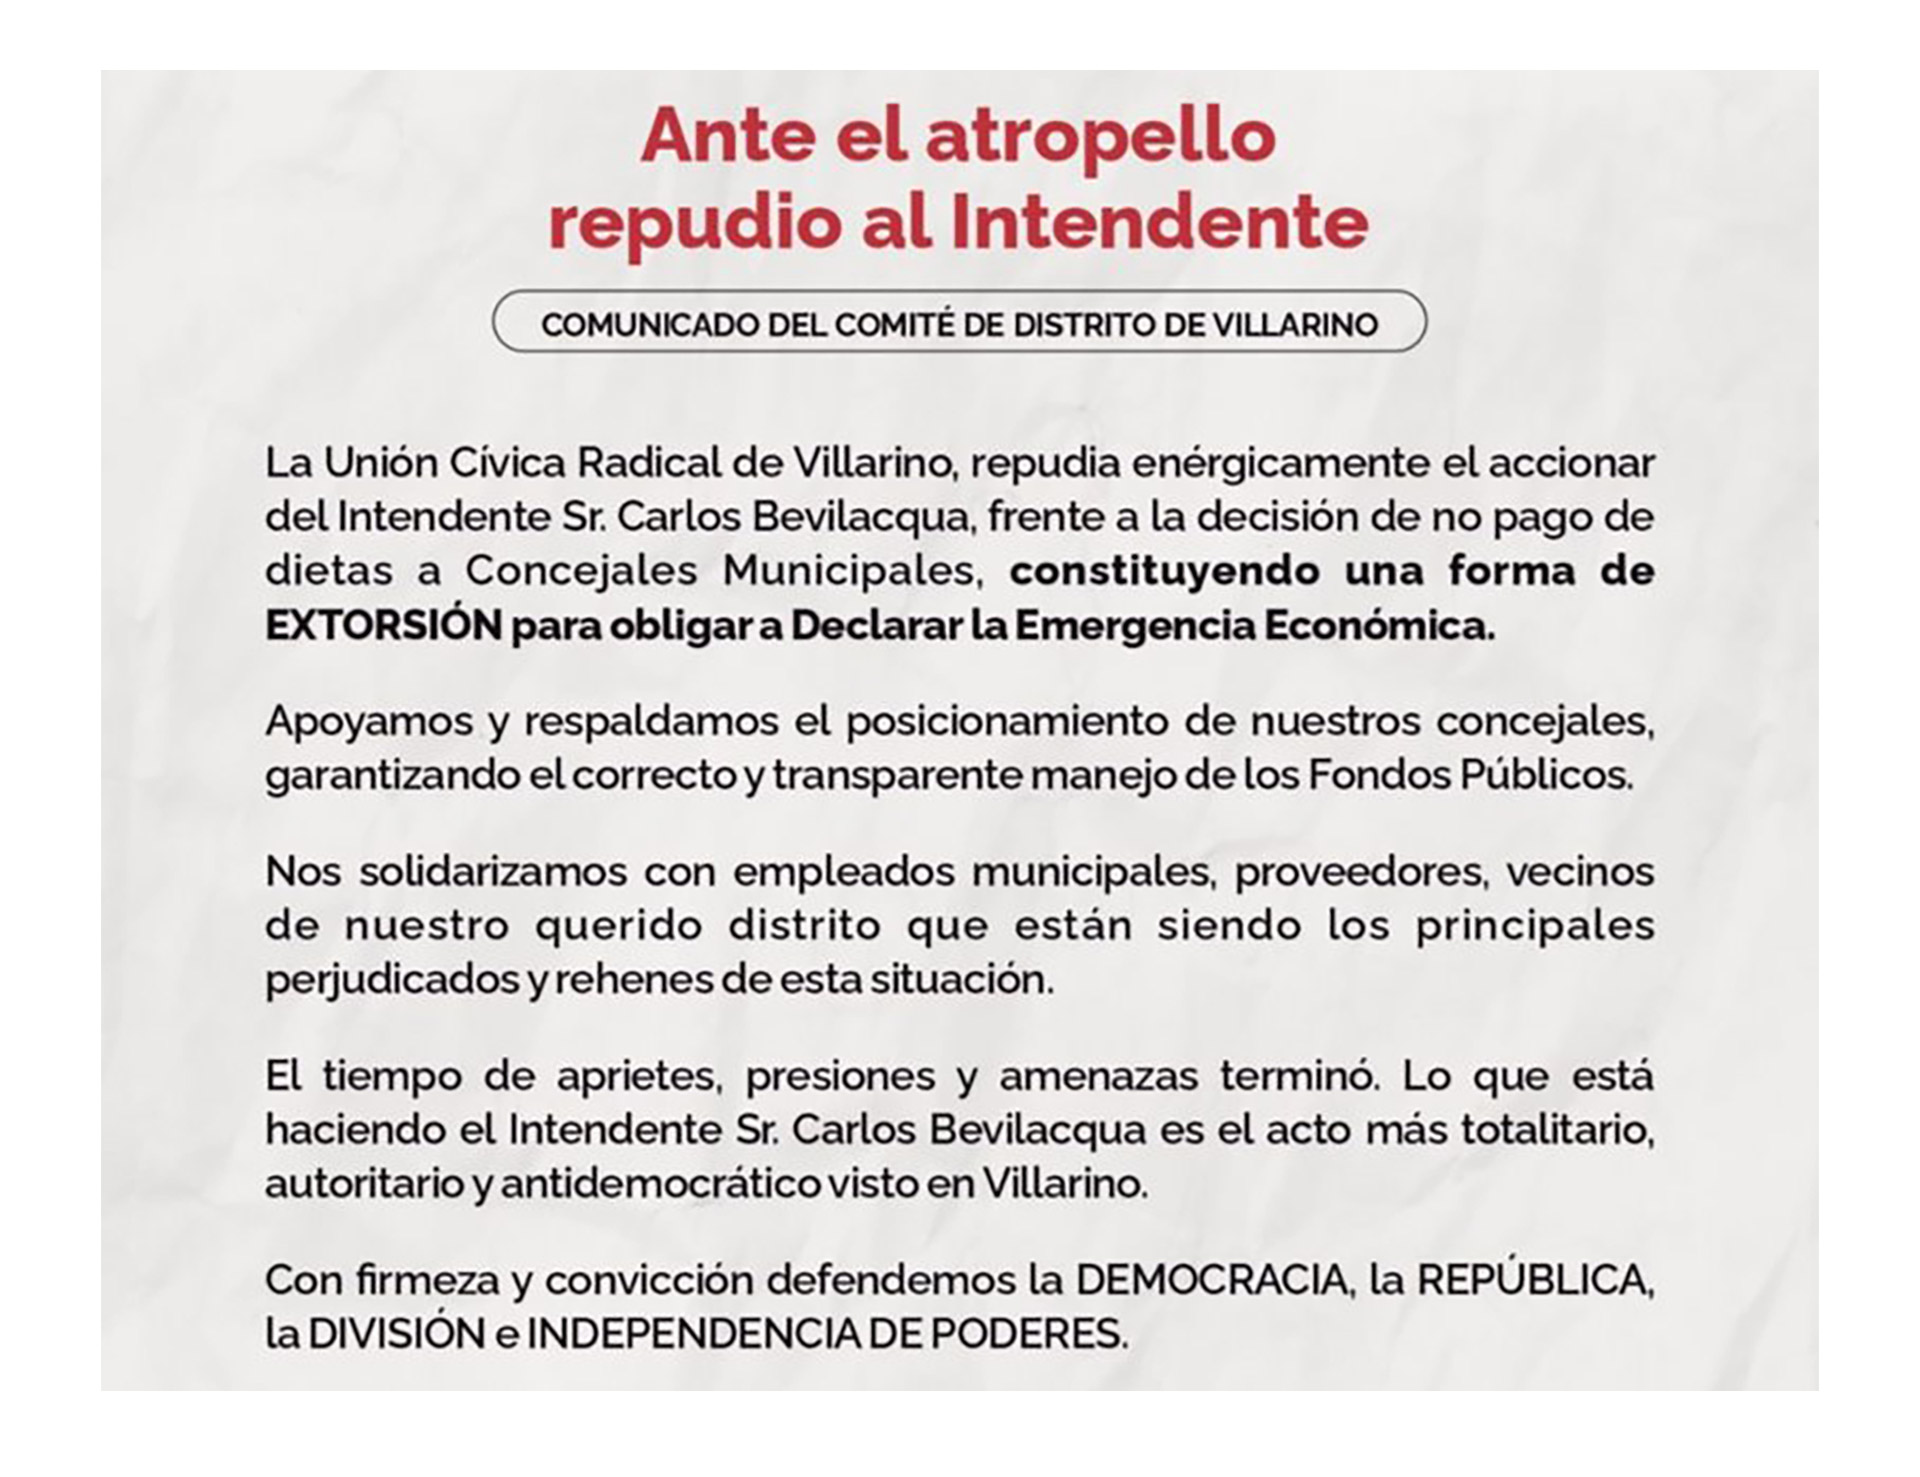 El comunicado de la UCR de Villarino repudiando el accionar de Bevilacqua